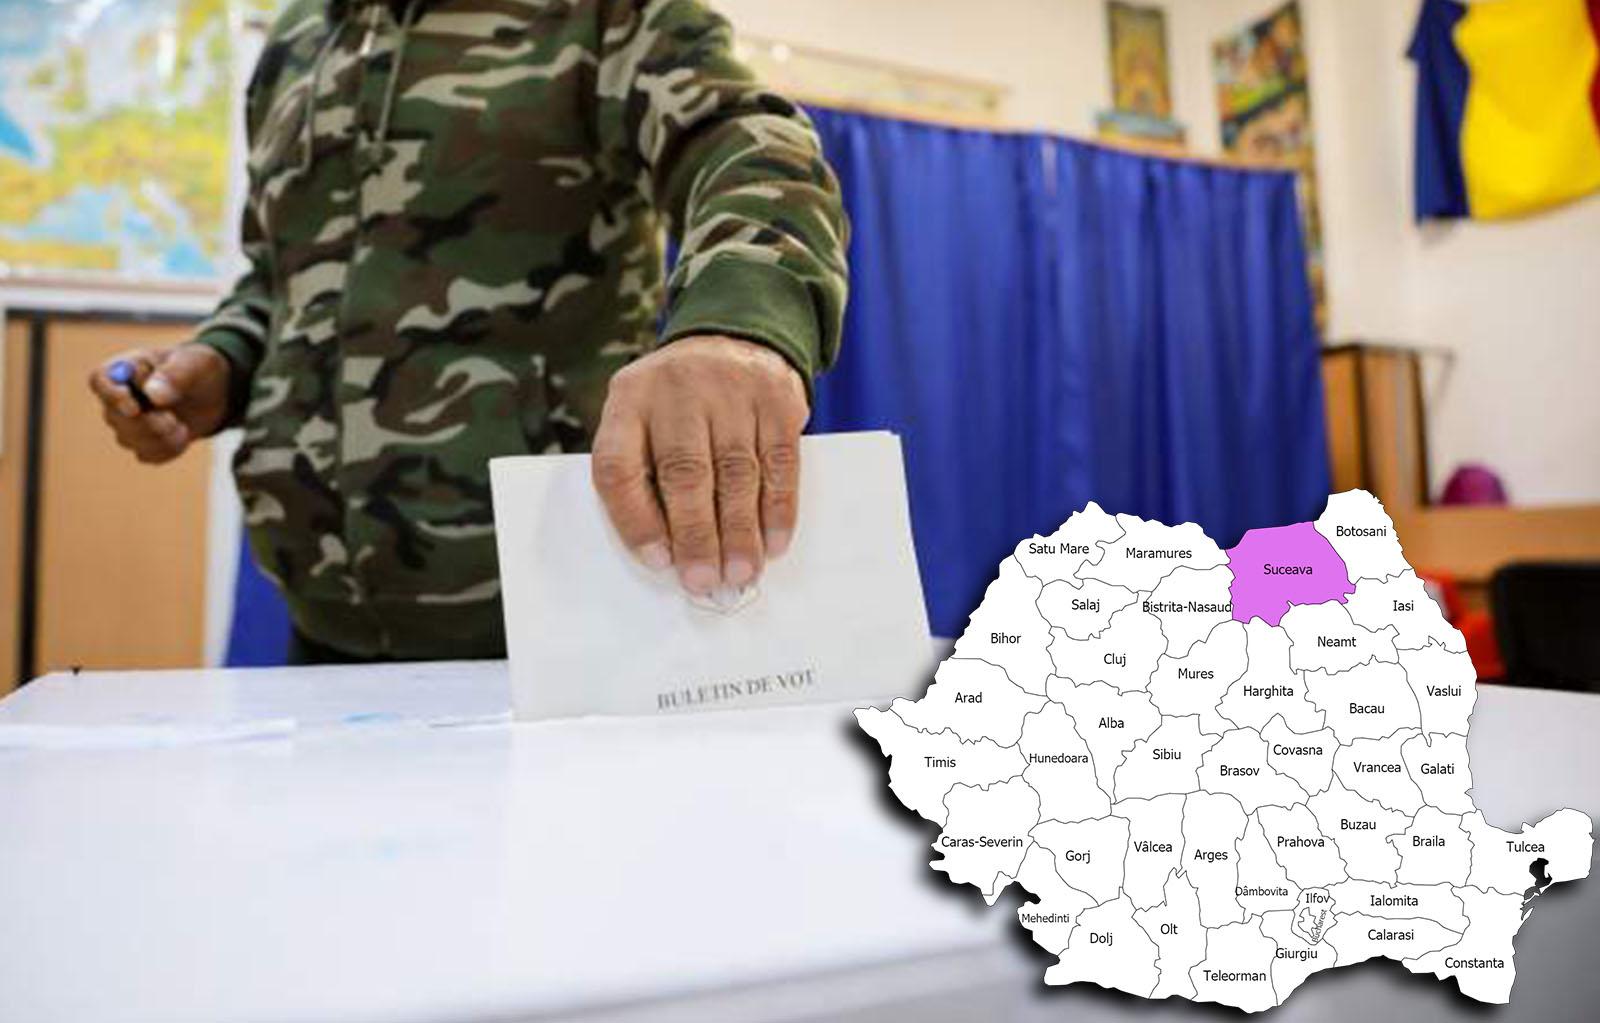 Rezultate alegeri parlamentare 2020 în județul Suceava. Cine câștigă alegerile pentru Senat și Camera Deputaților